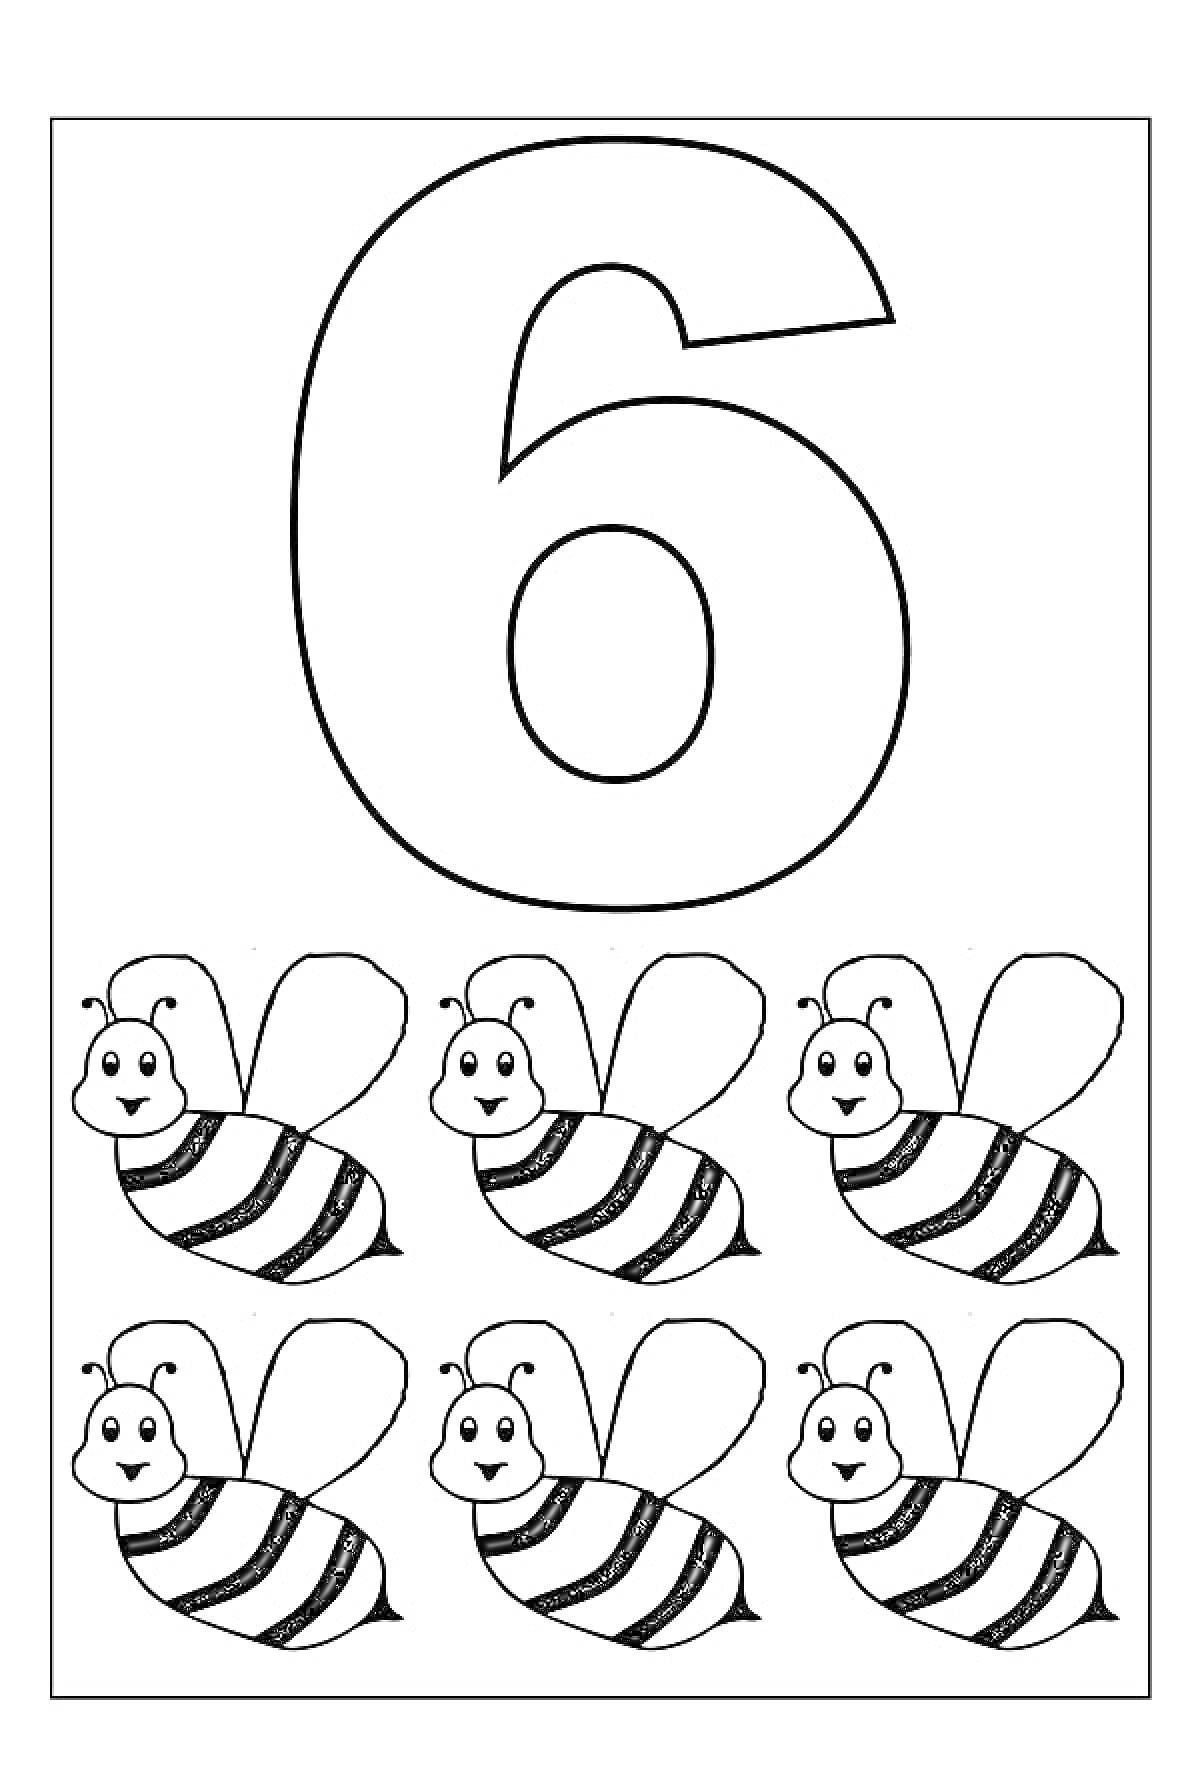 Раскраска Цифра 6 и шесть пчел